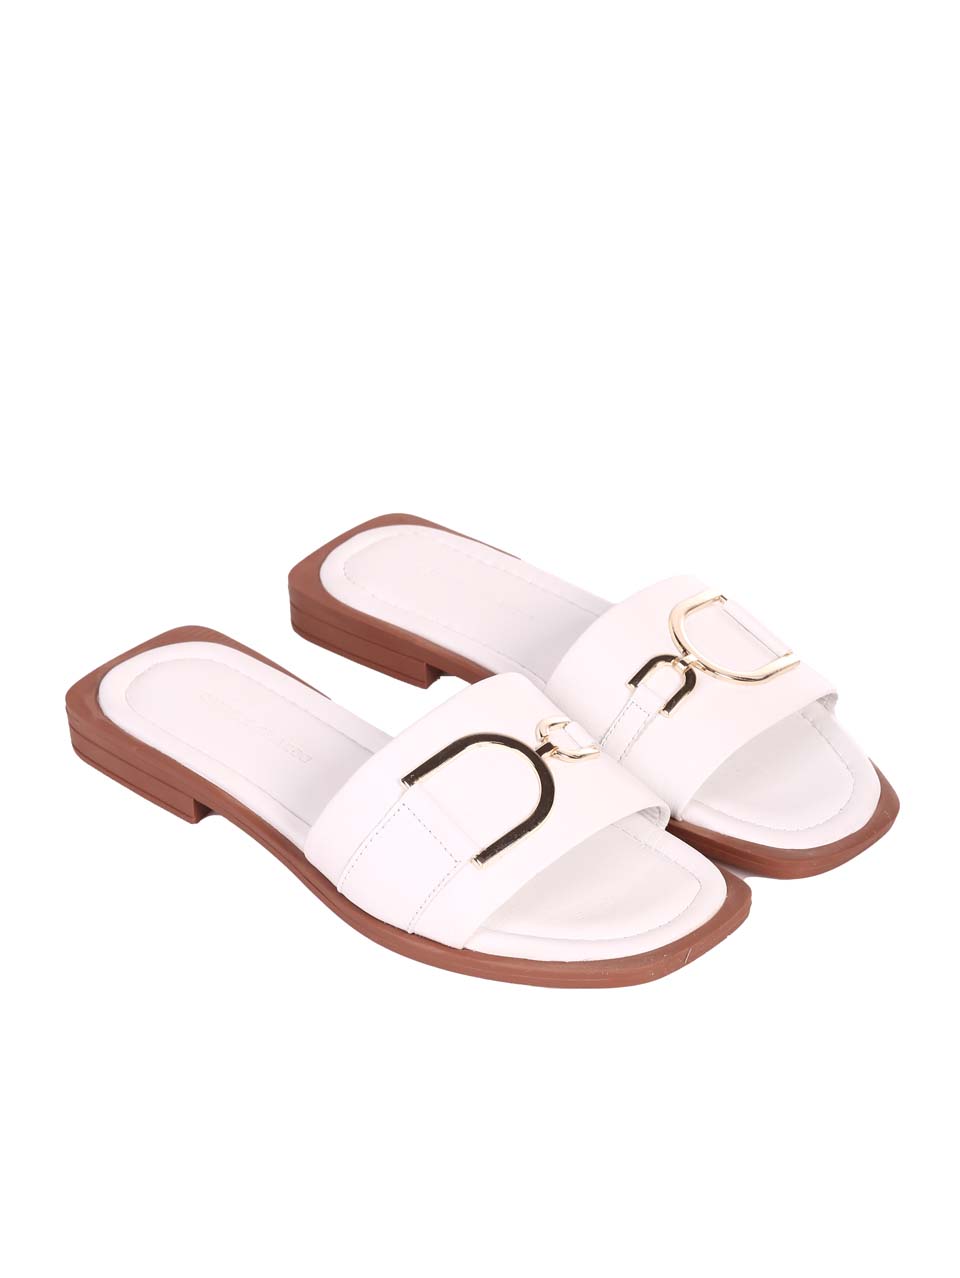 Ежедневни дамски равни чехли от естествена кожа в бяло 5AT-24352 white